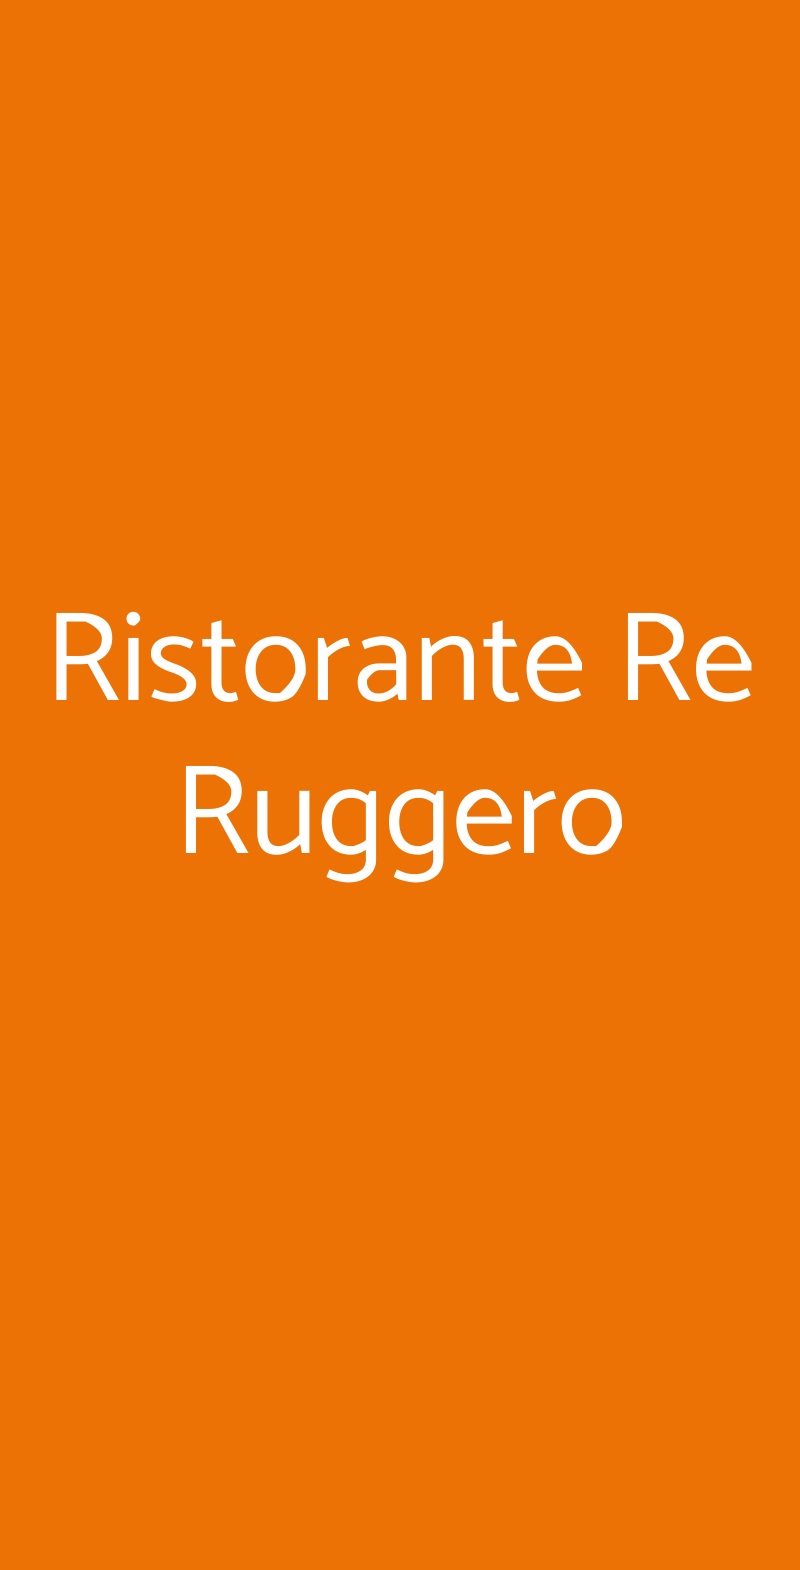 Ristorante Re Ruggero Monreale menù 1 pagina